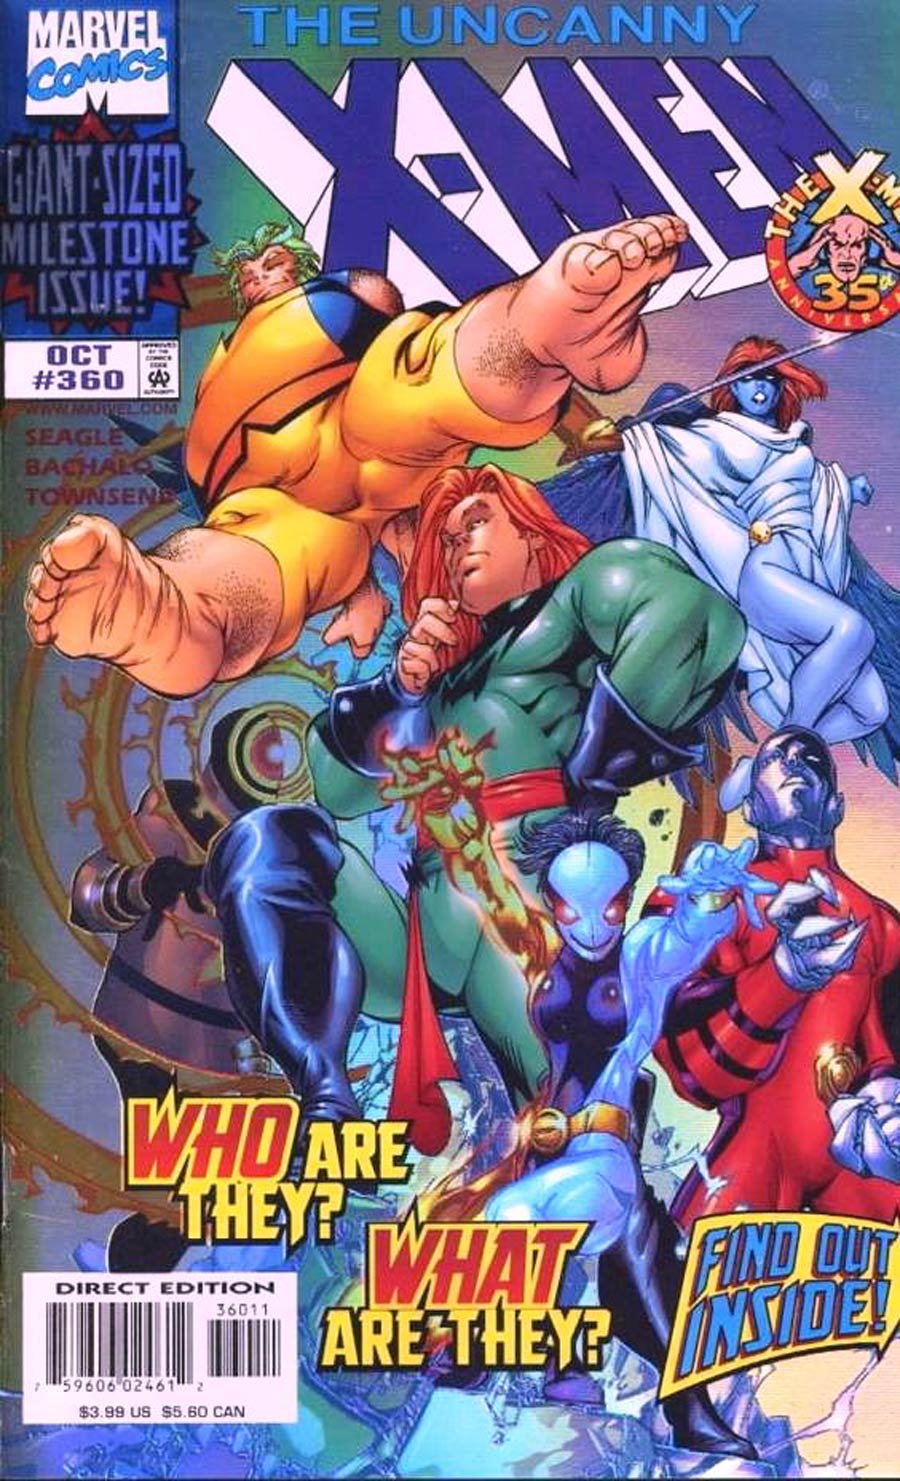 Uncanny X-Men #360 Cover A Holo Foil Cover